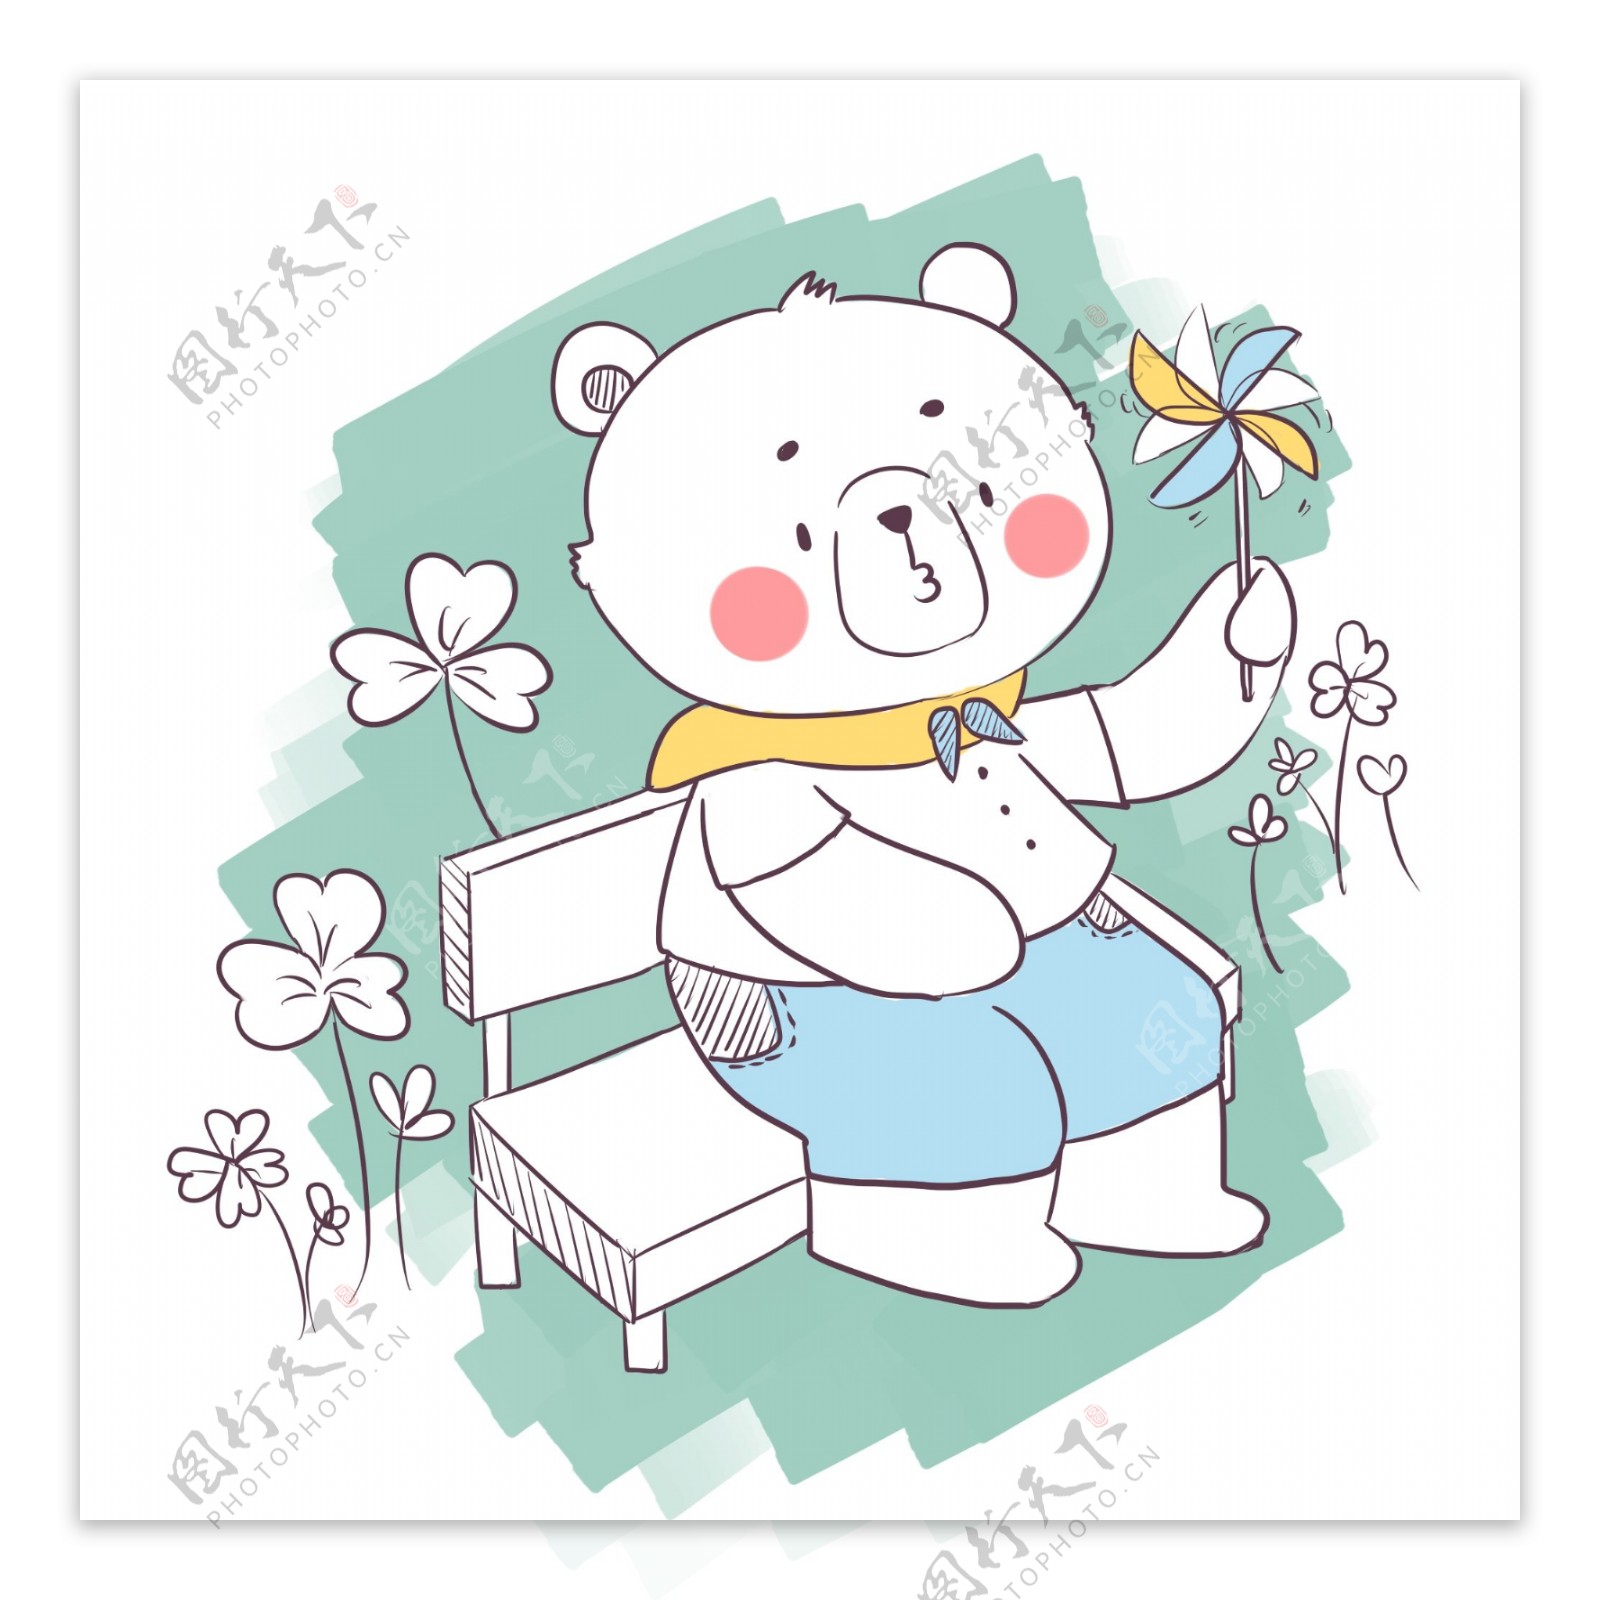 简笔画卡通可爱动物小熊